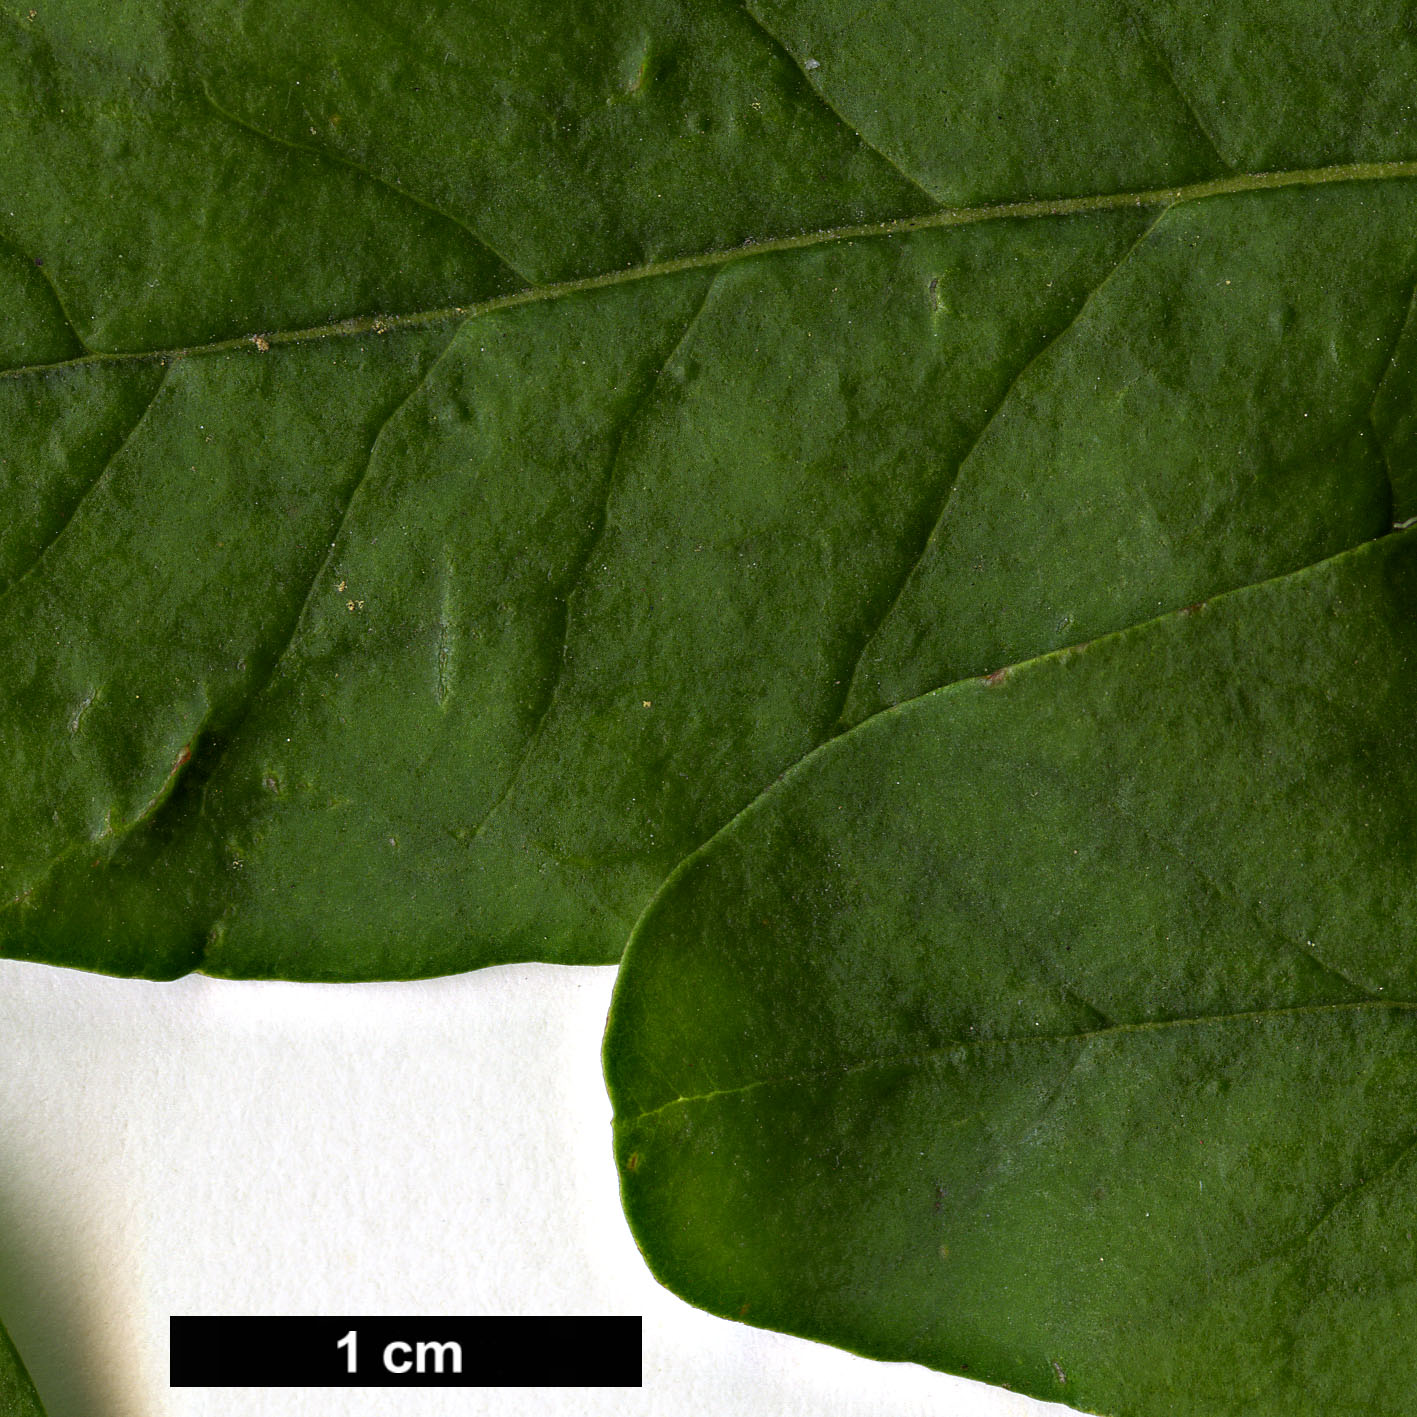 High resolution image: Family: Oleaceae - Genus: Ligustrum - Taxon: obtusifolium - SpeciesSub: subsp. suave